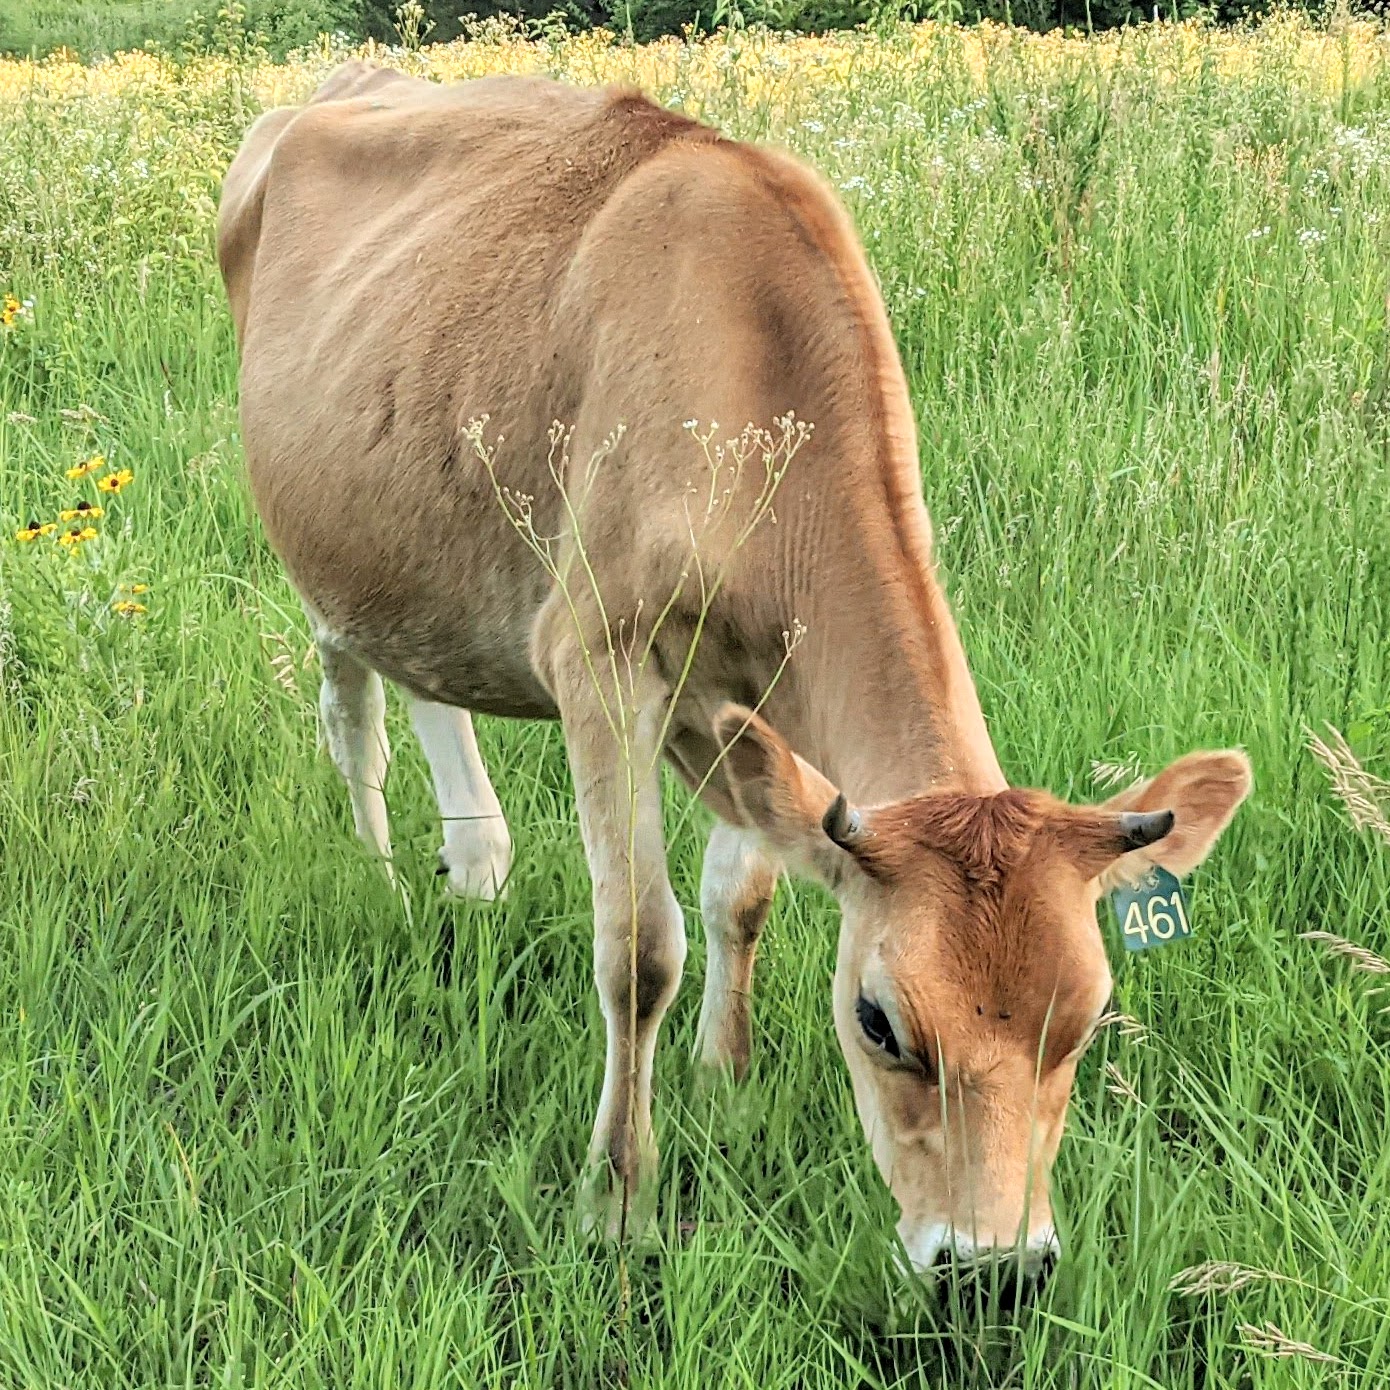 jersey heifer grazing in green grass